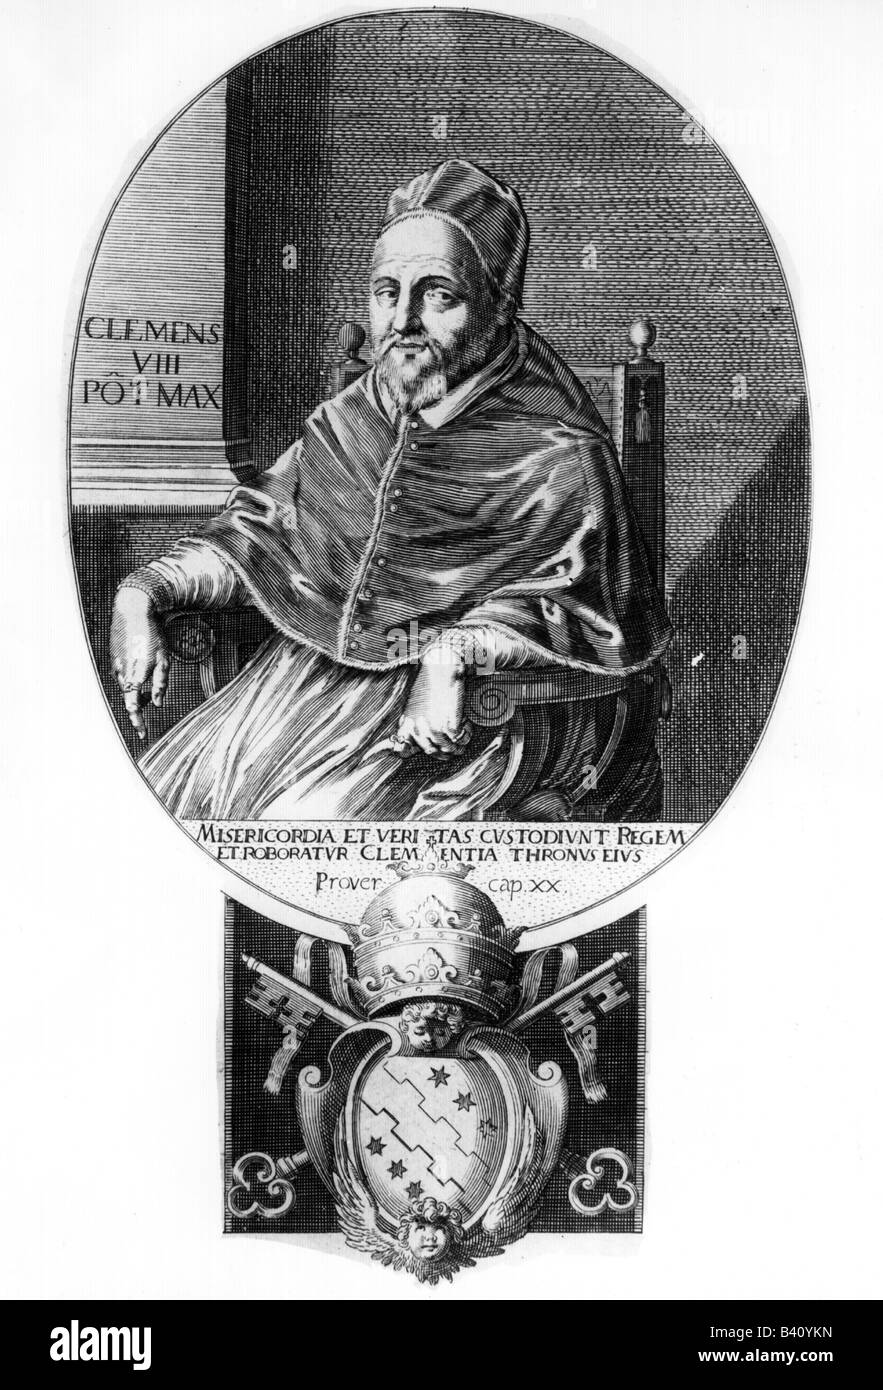 Clément VIII (Ippolito Aldobrandini), 24.2.1536 - 3.3.1605, le Pape 30.1.1592 - 3.3.1605, demi-longueur, gravure sur cuivre, 17e siècle, l'artiste a le droit d'auteur , de ne pas être effacé Banque D'Images